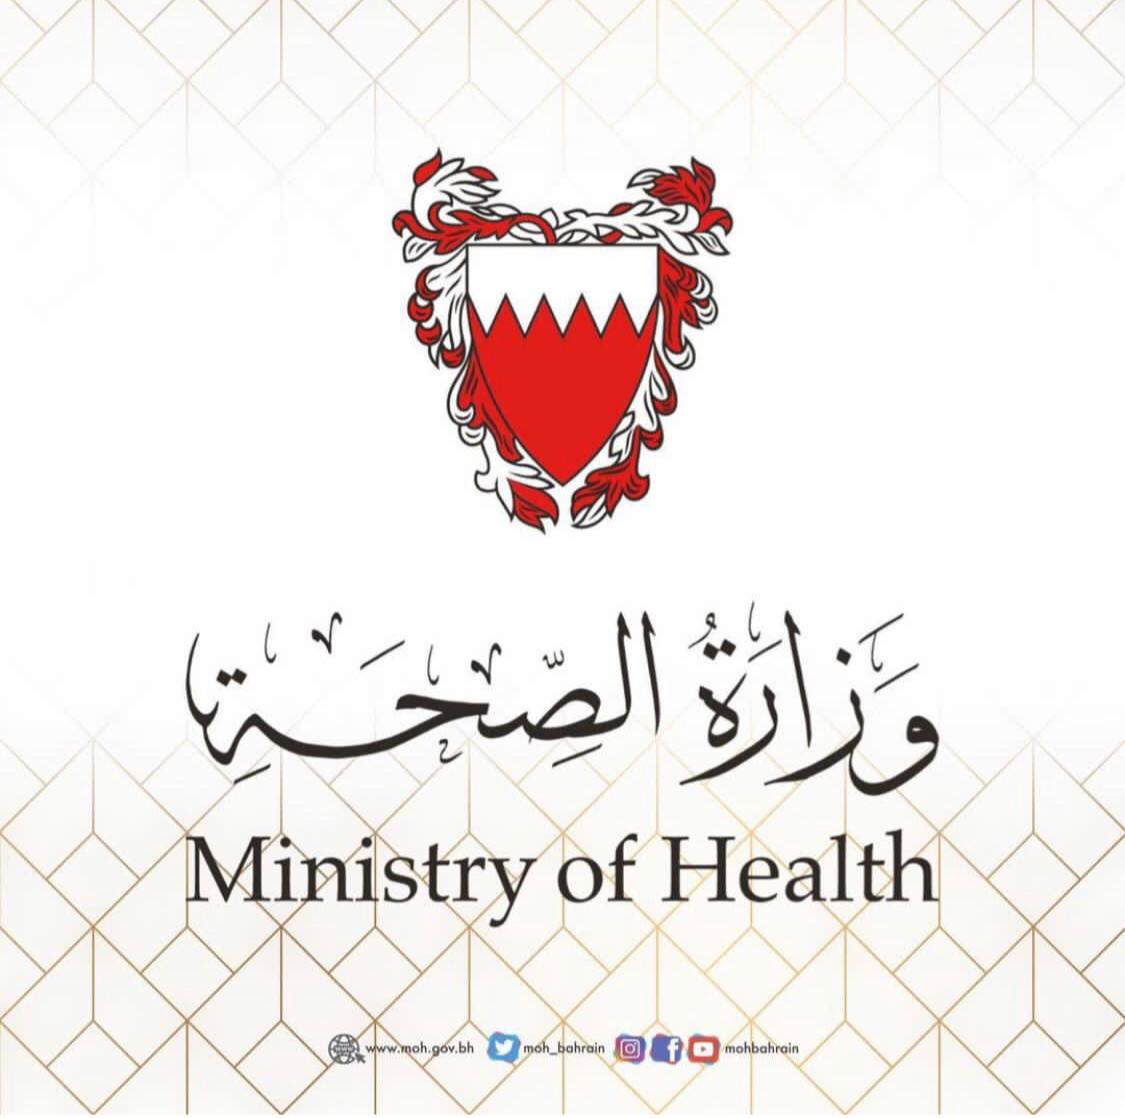 وزارة الصحة تعلن عن تمديد مجموعة من القرارات المتعلقة بفيروس كورونا "كوفيد 19"